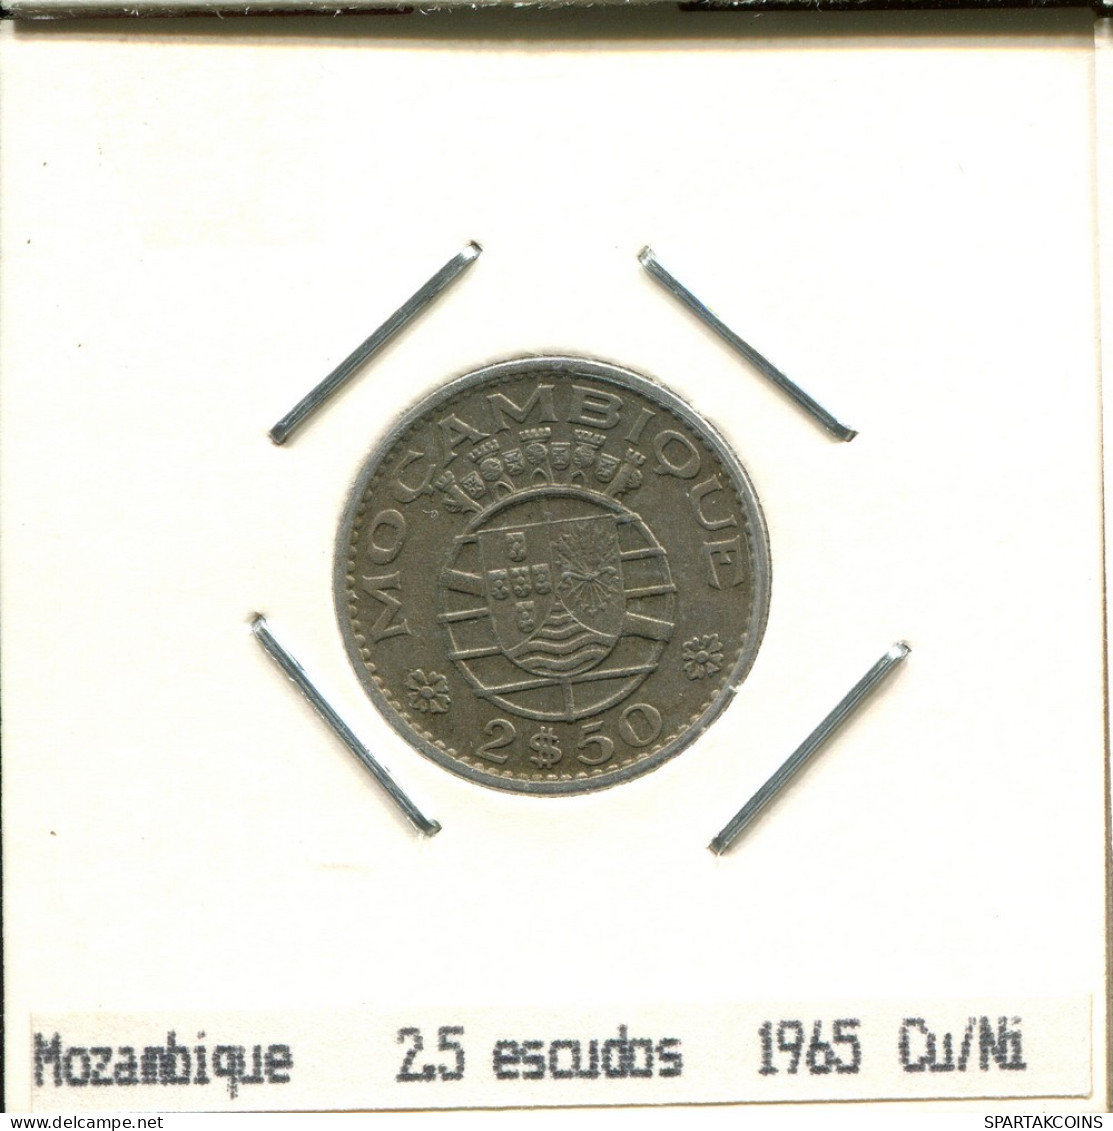 2$50 ESCUDOS 1965 MOZAMBIQUE Coin #AS413.U.A - Mosambik